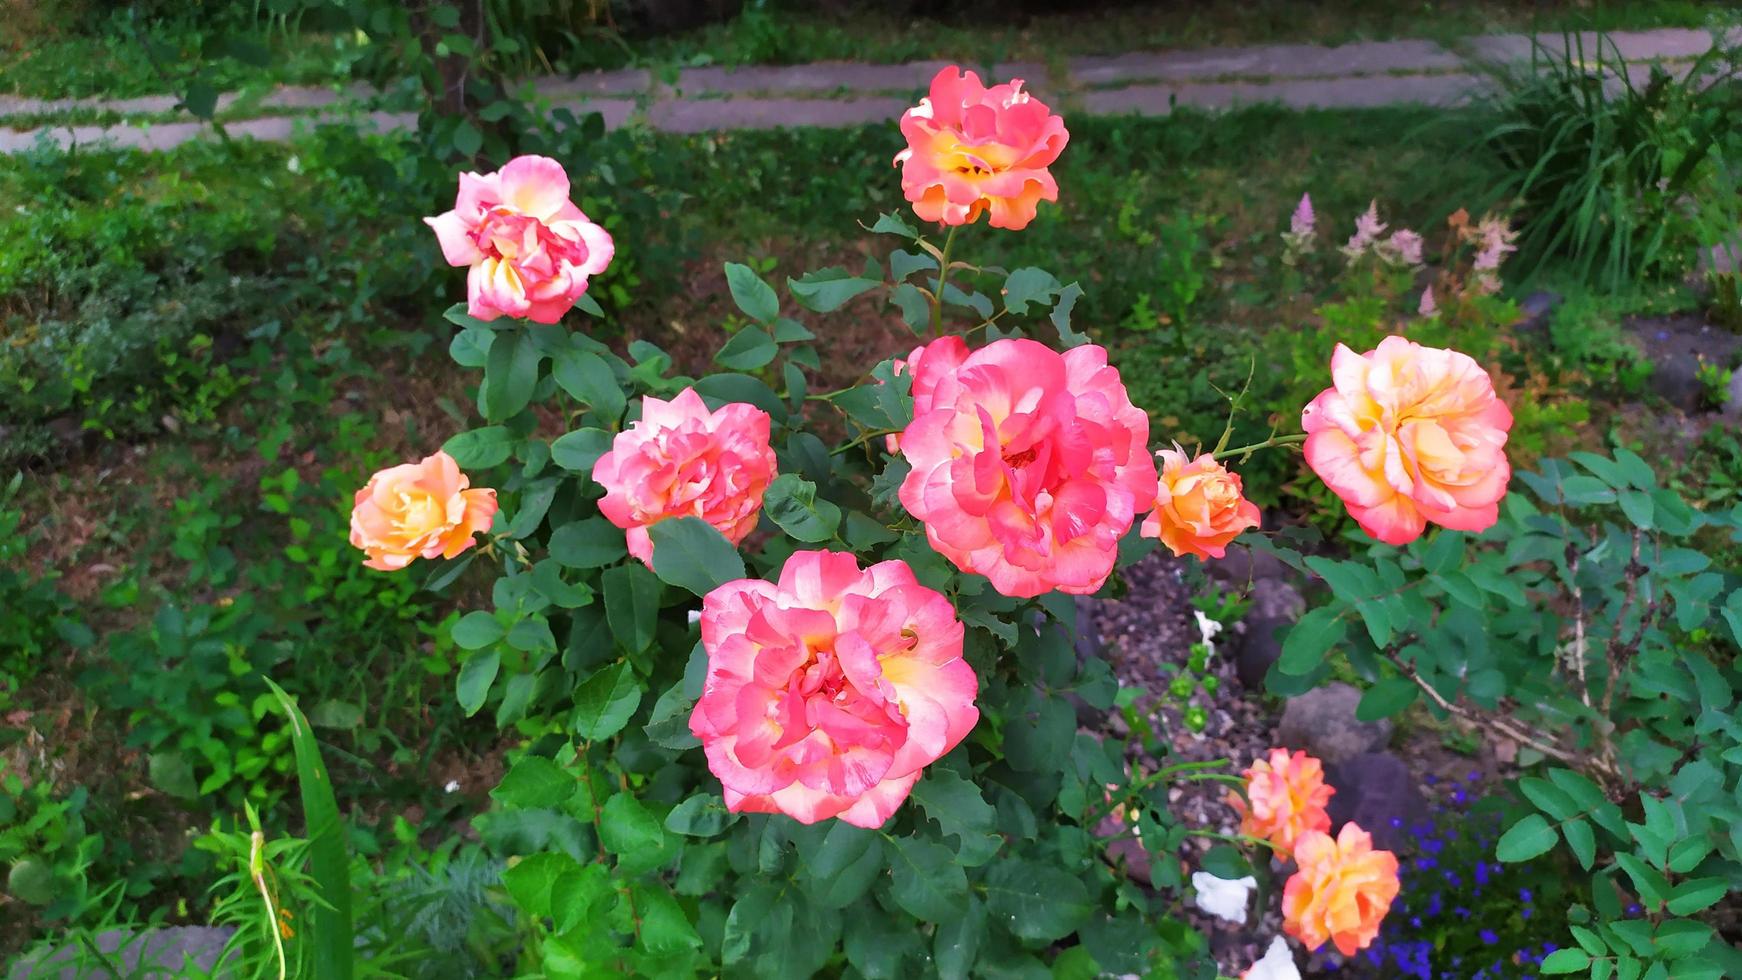 roseira de jardim durante a floração no jardim foto